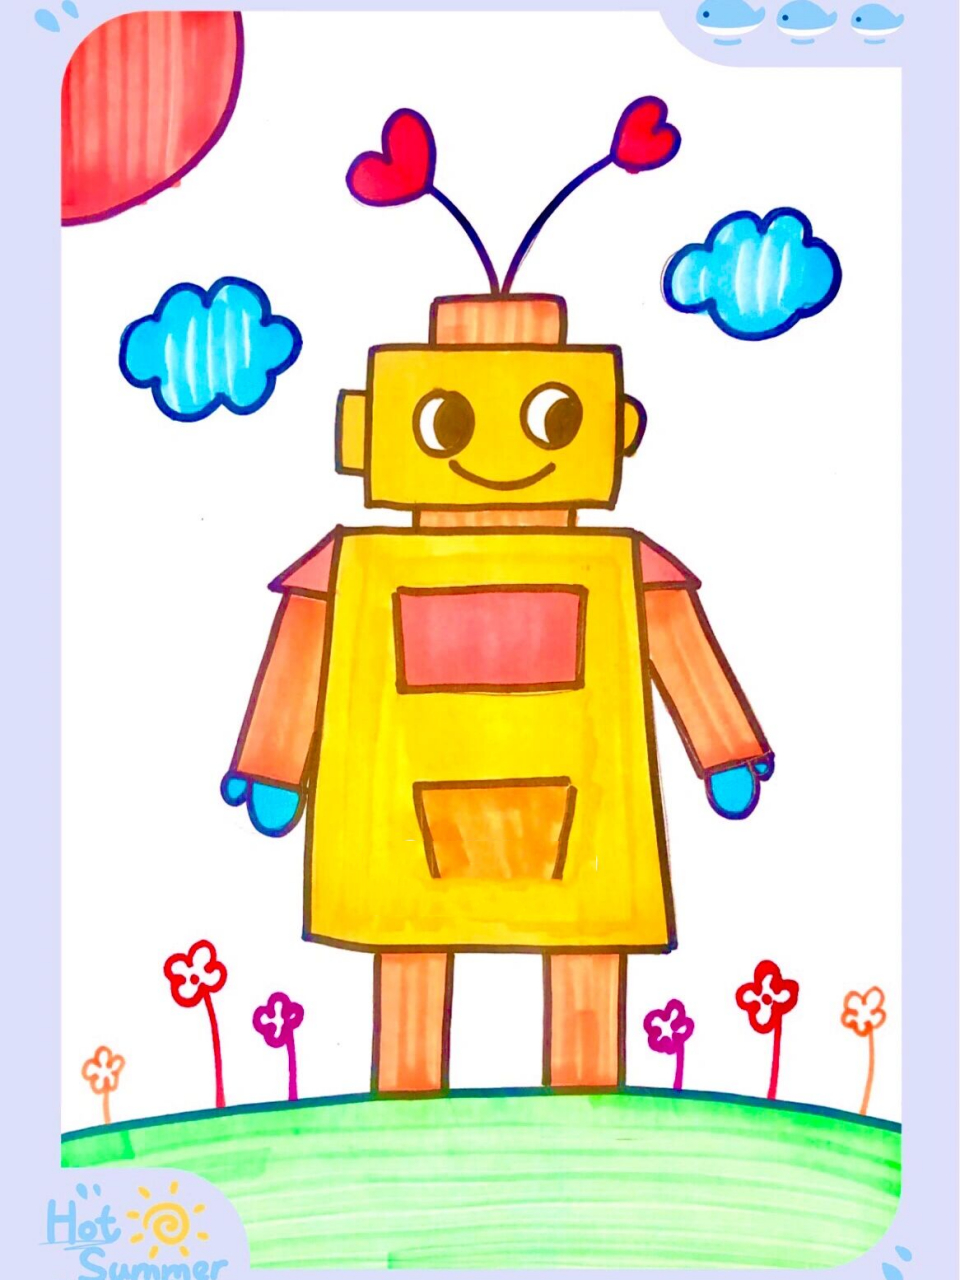 可爱机器人儿童画/简笔画 机器人儿童创意美术 难度:简单 适合4